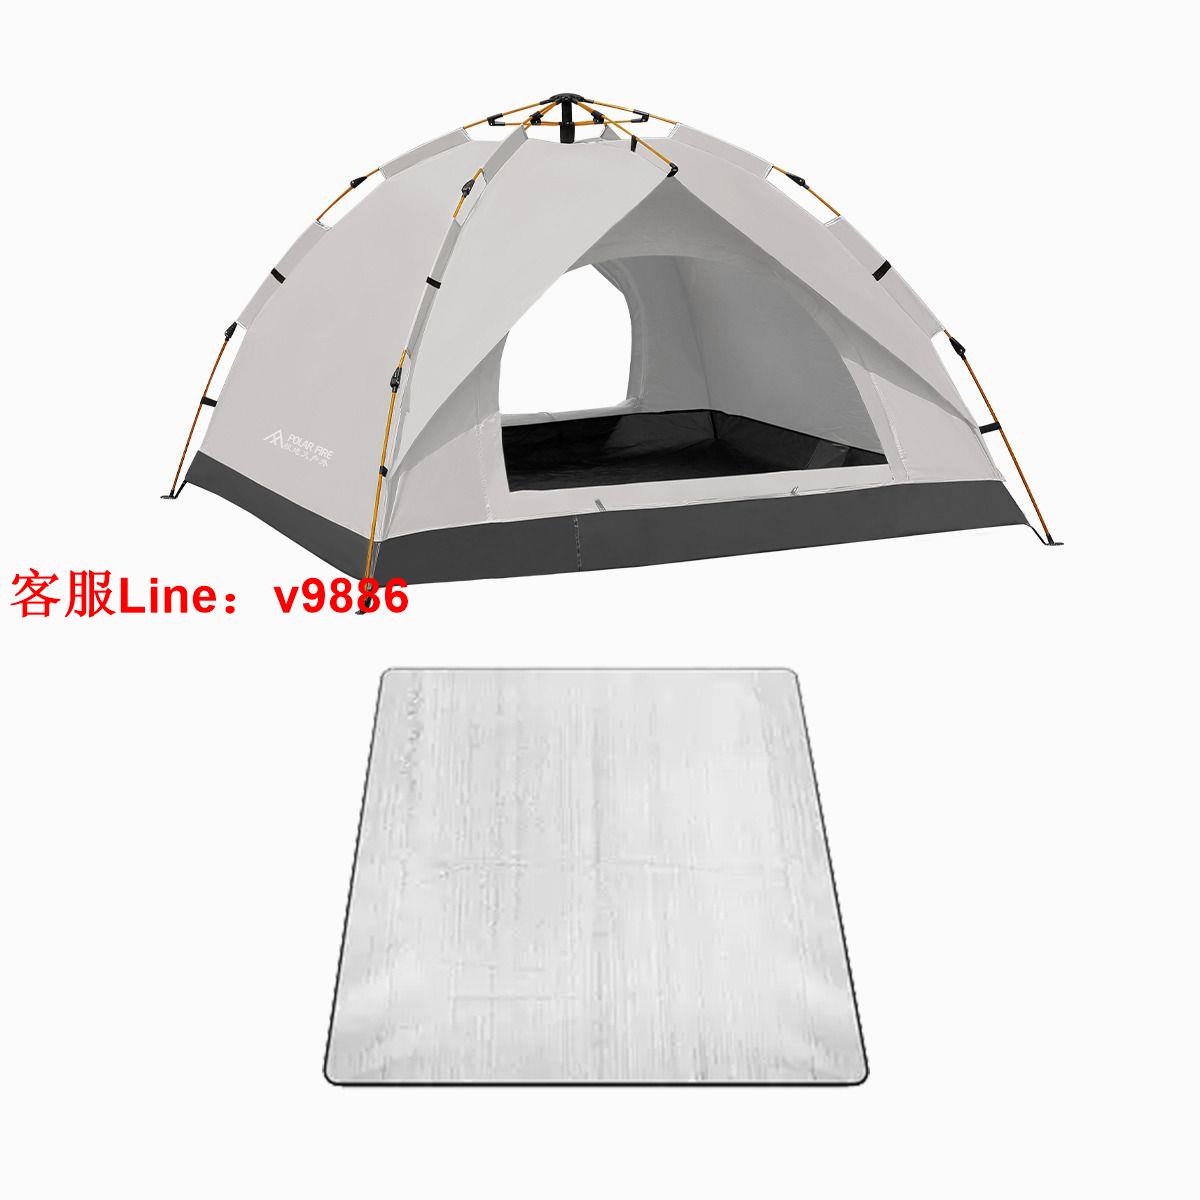 【最低價】【公司貨】極地火戶外野營帳篷面搭建速開新品大空間外出旅行便攜式裝備